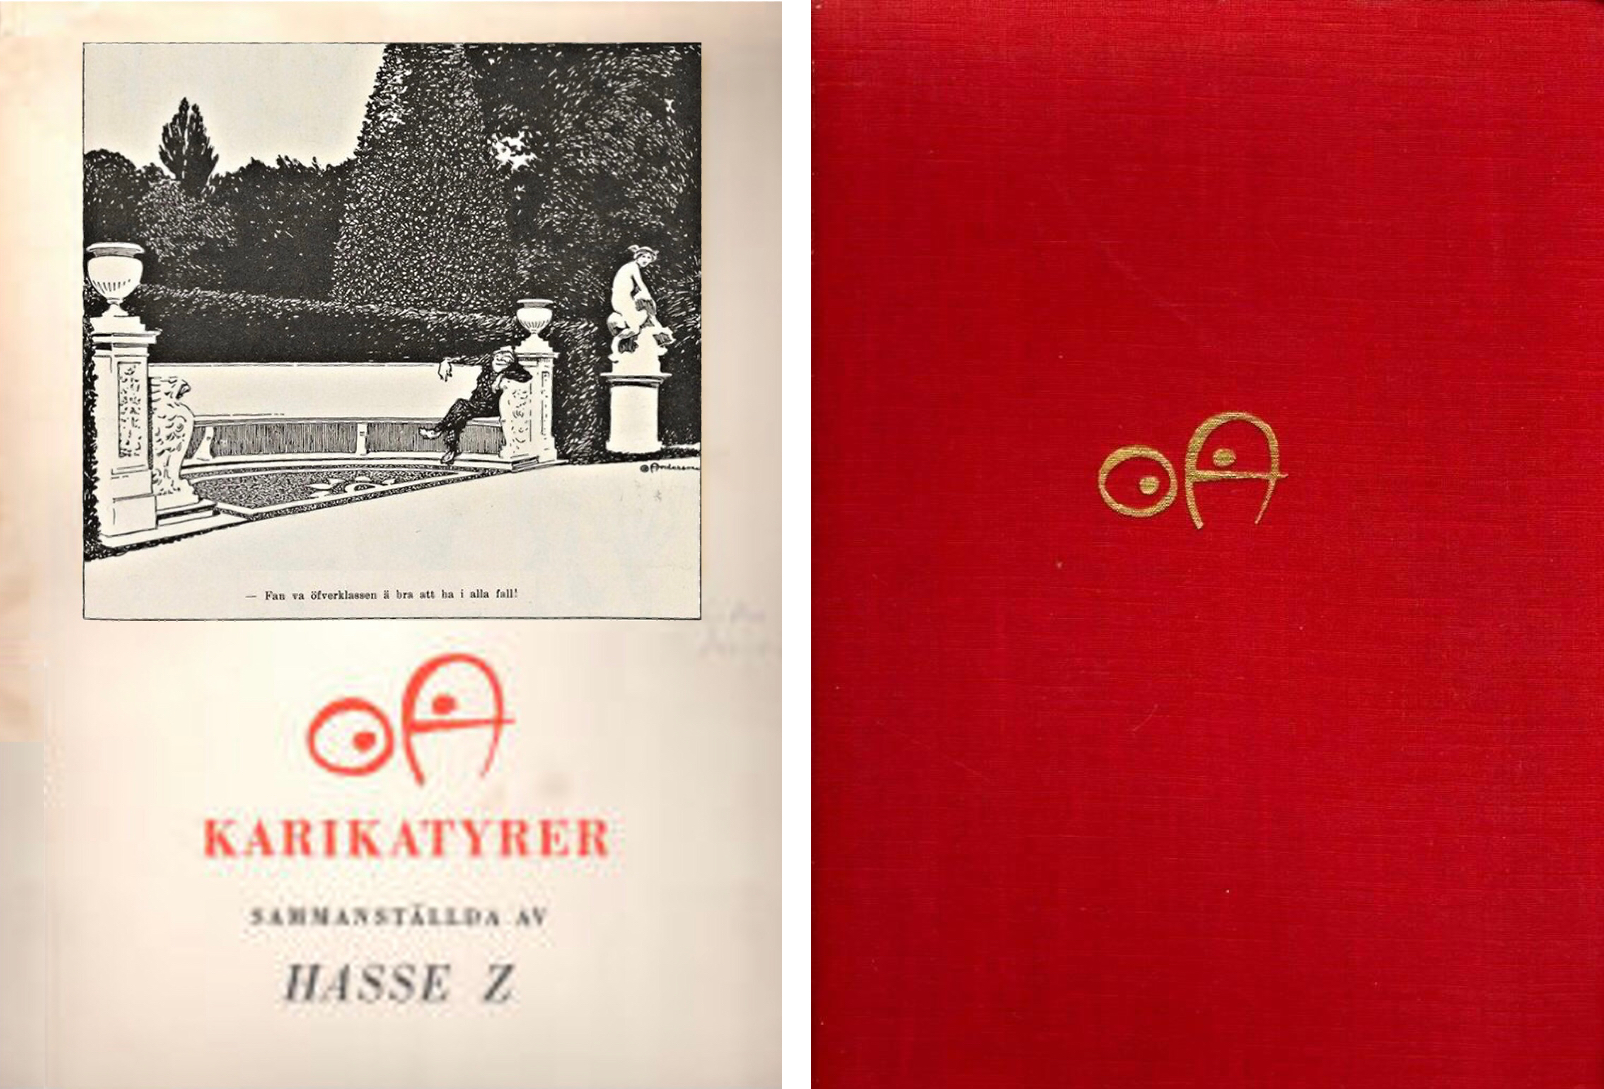 1945 – OA Karikatyrer. Bonnier, Stockholm. 161 sidor. Redaktör Hans Zetterström. Med och utan skyddsomslag. ©Bonniers